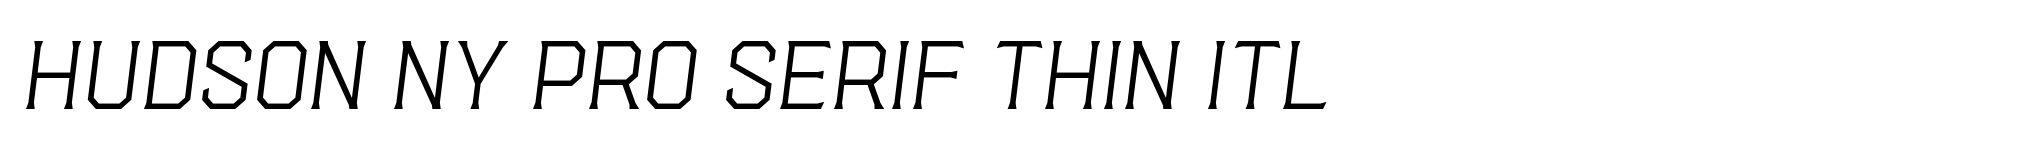 Hudson NY Pro Serif Thin Itl image